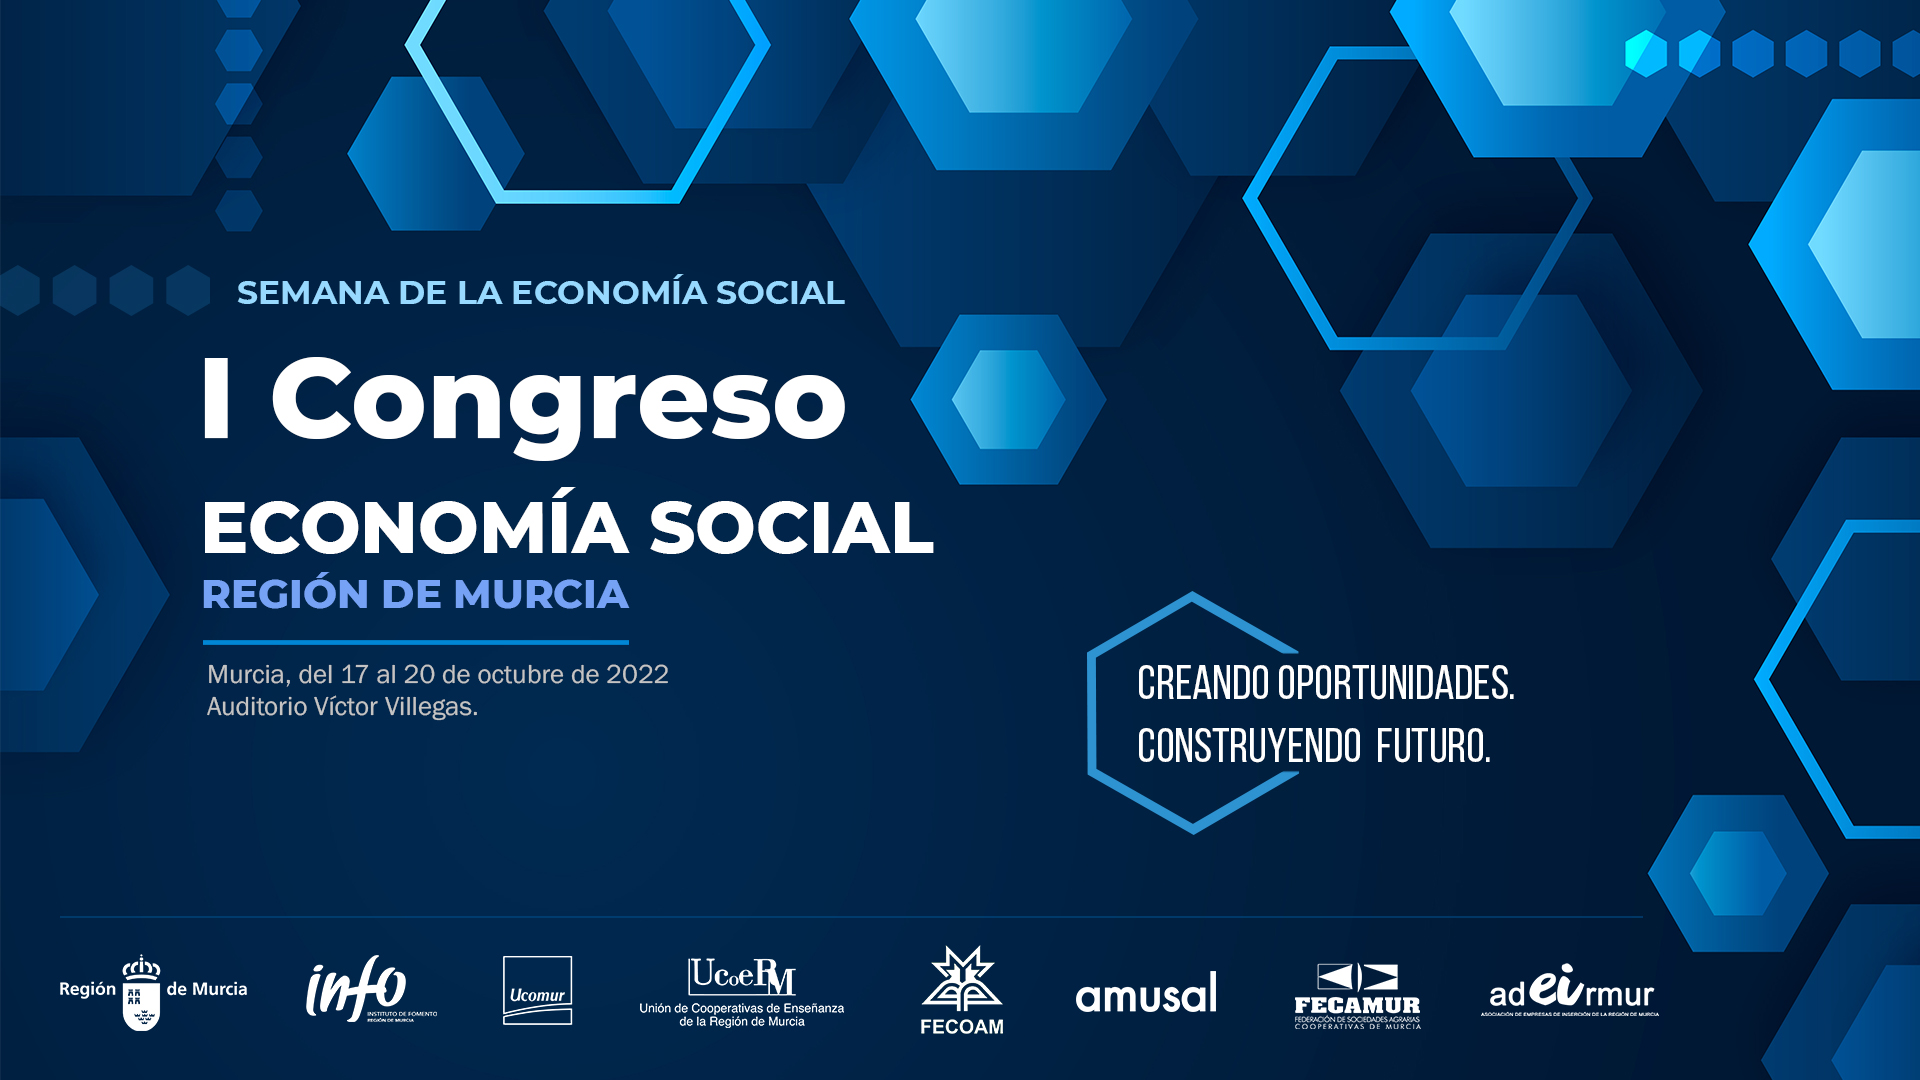 La Región de Murcia será el epicentro de la economía social del 17 al 20 de octubre